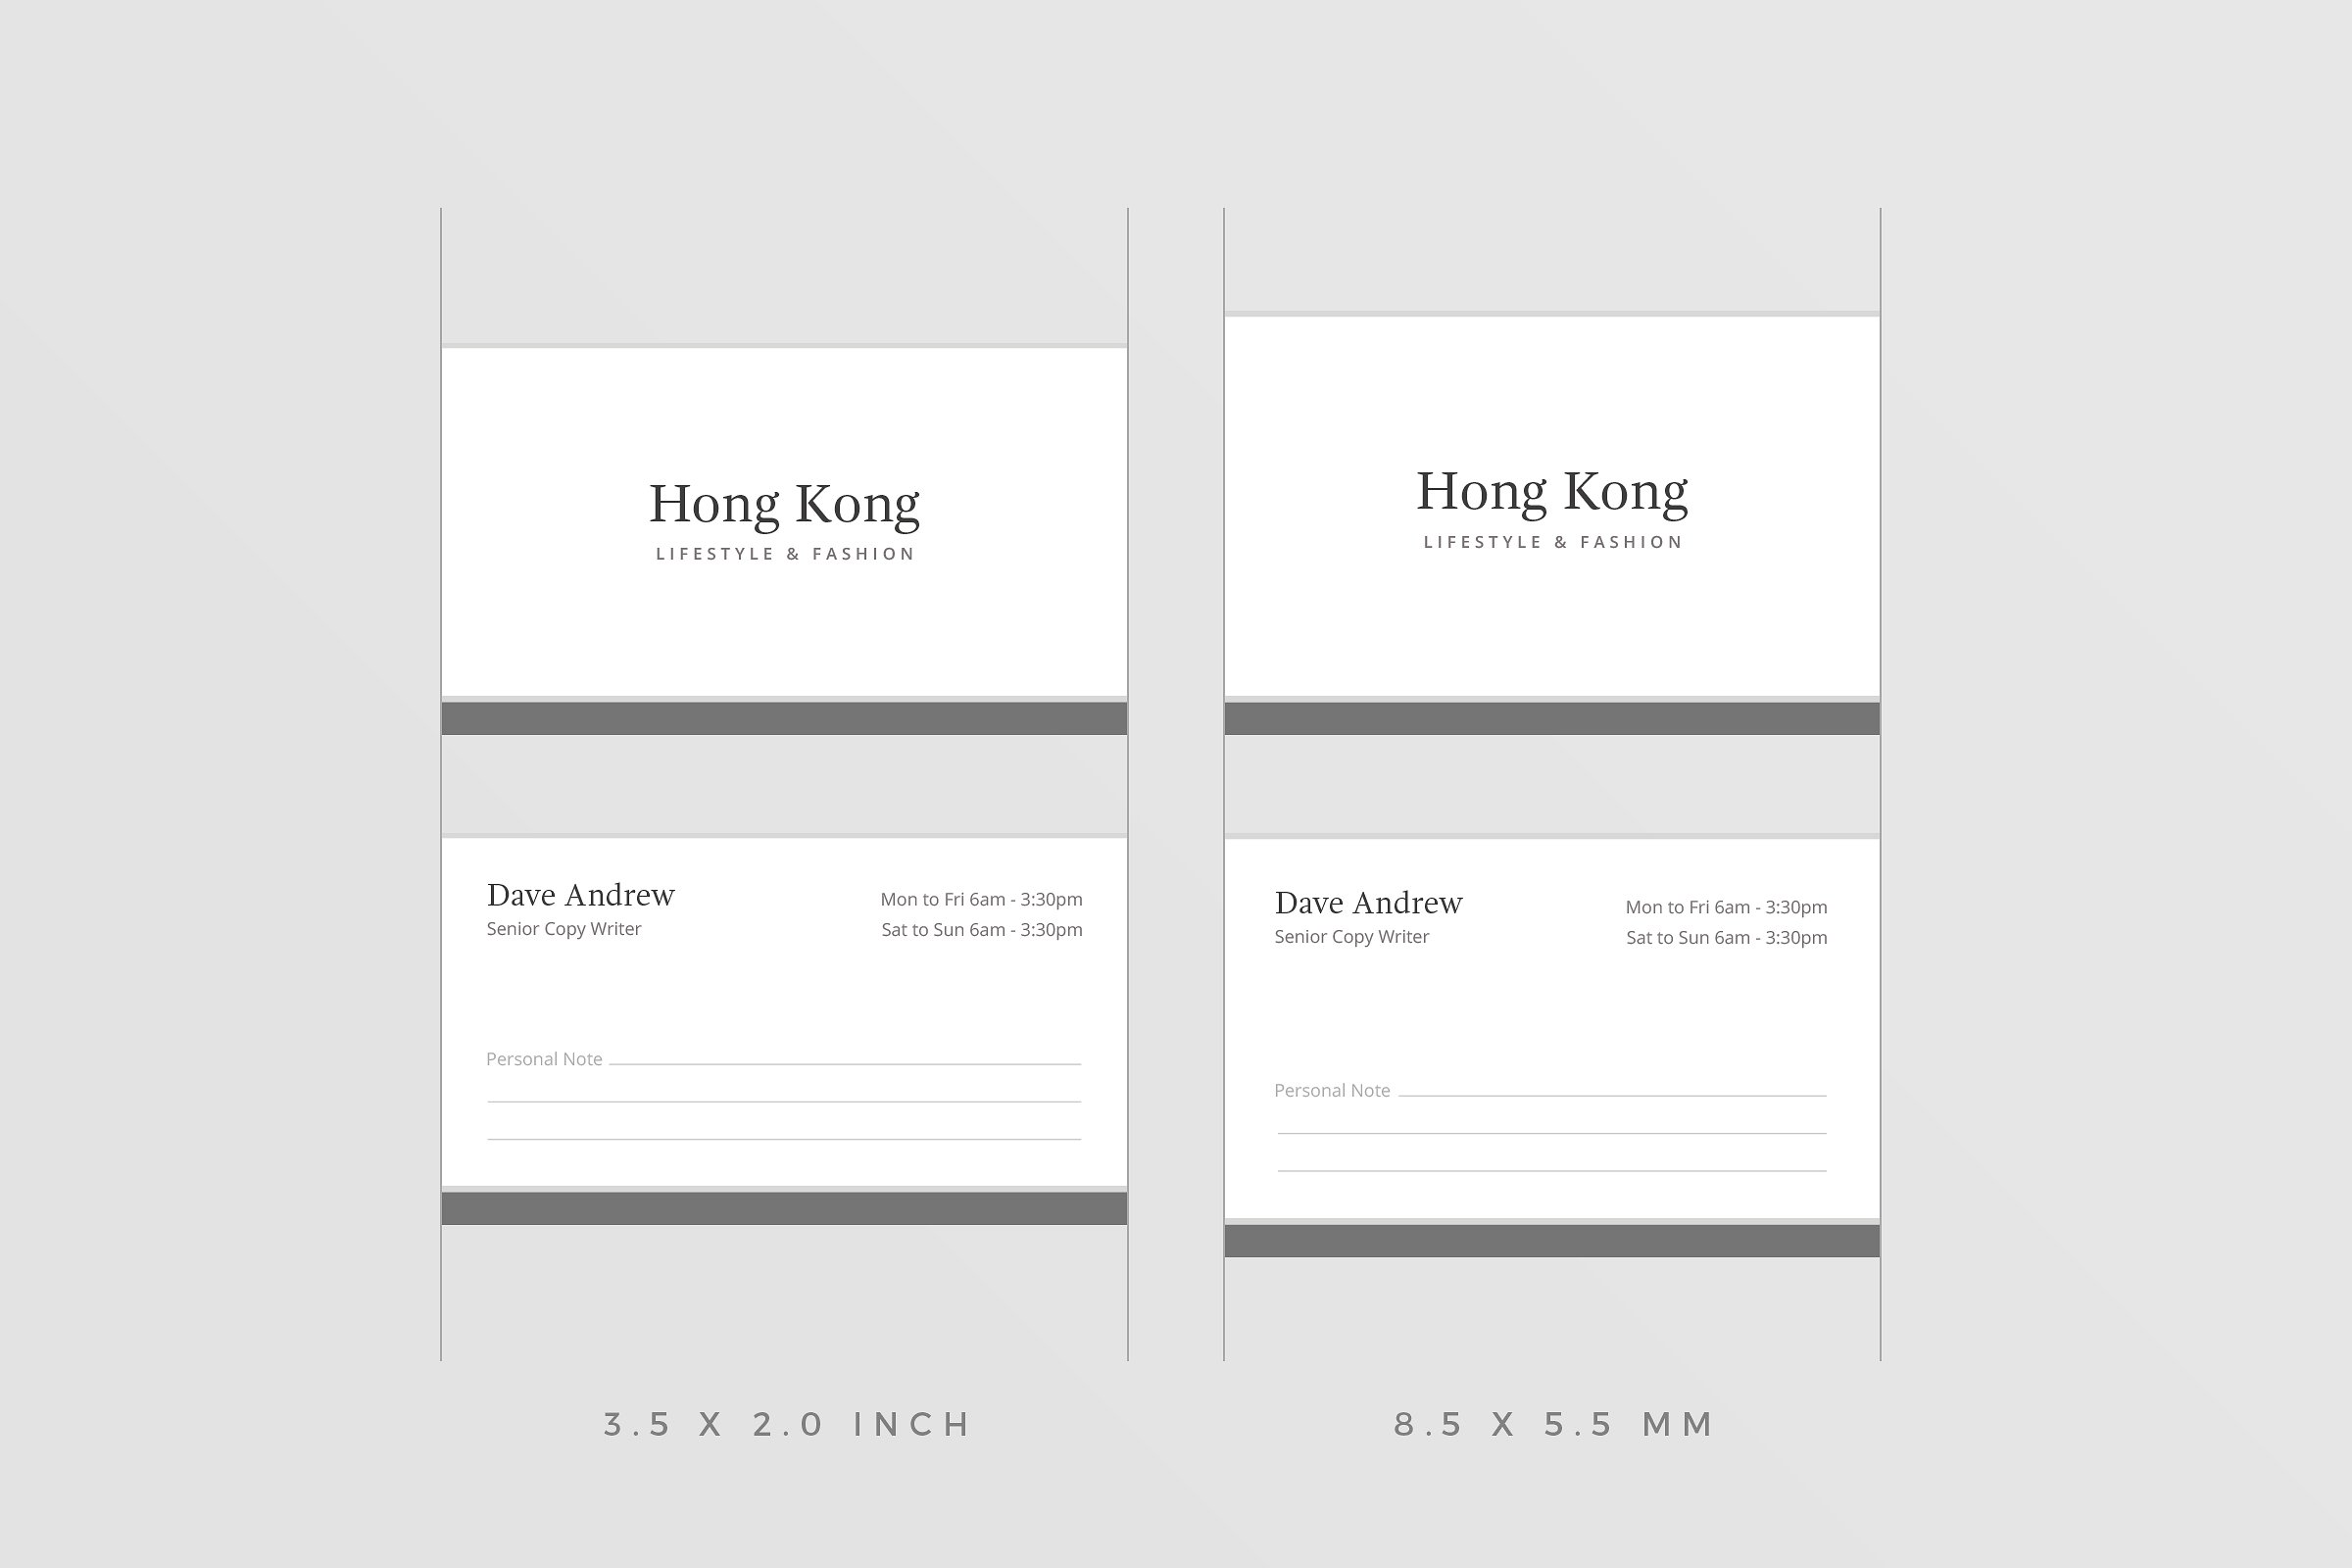 极简主义企业名片设计模板4 Hong Kong Business Card插图(4)